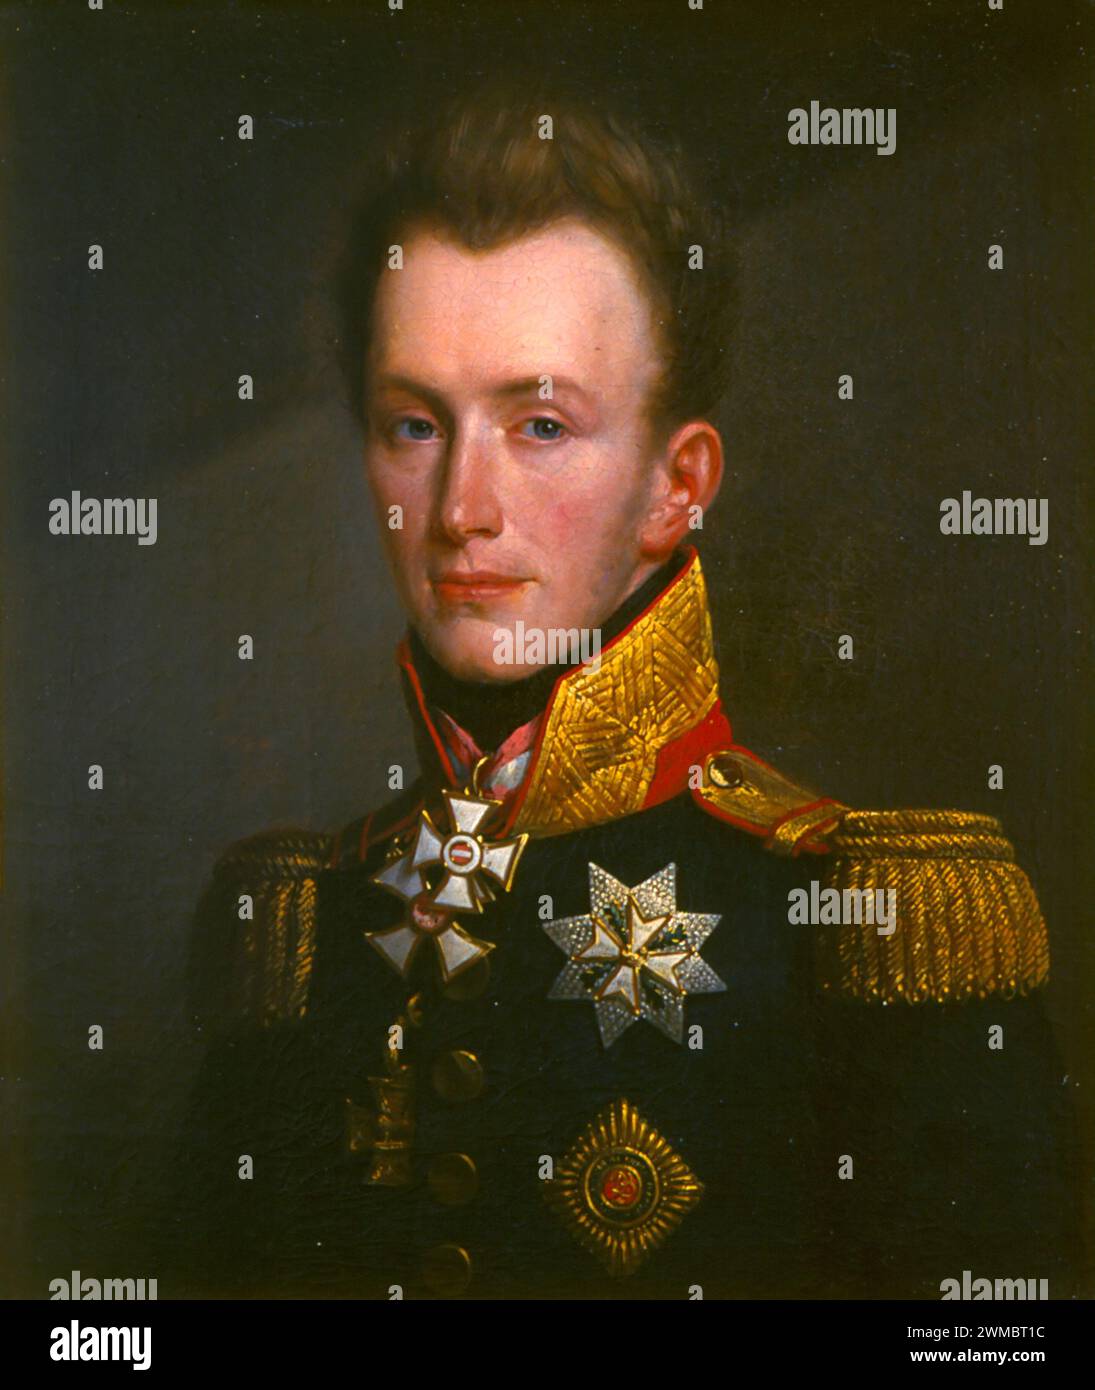 Guglielmo II nella battaglia di Waterloo, Guglielmo, Principe d'Orange, Guglielmo II (1792 – 1849) Re dei Paesi Bassi, Granduca di Lussemburgo e Duca di Limburgo. Guglielmo II dei Paesi Bassi Foto Stock